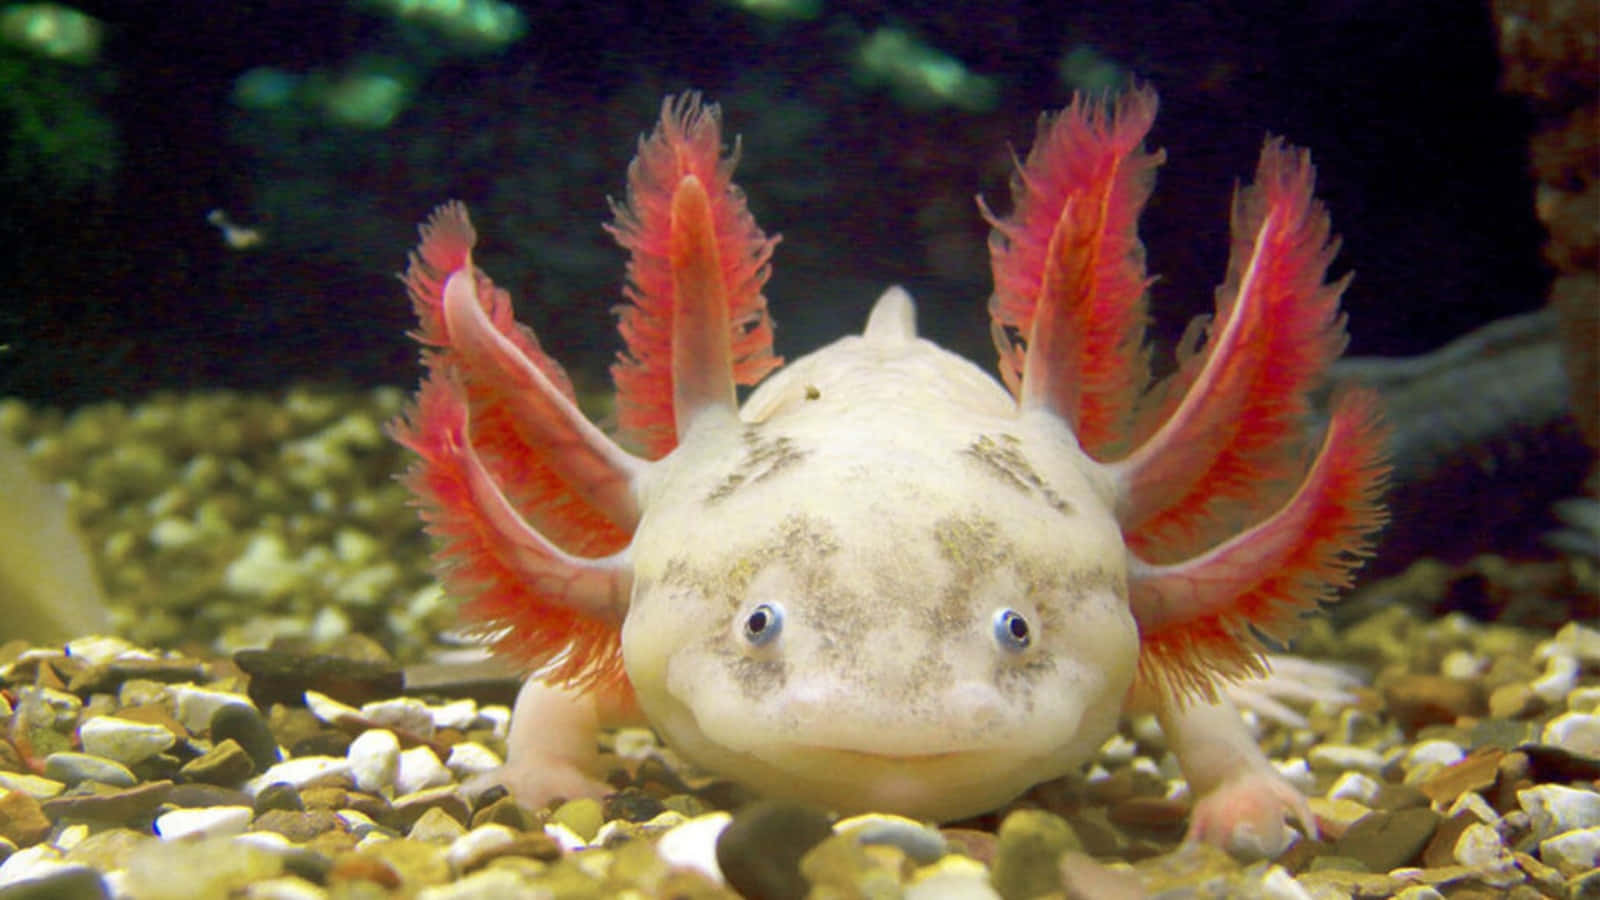 Purely Adorable Axolotl